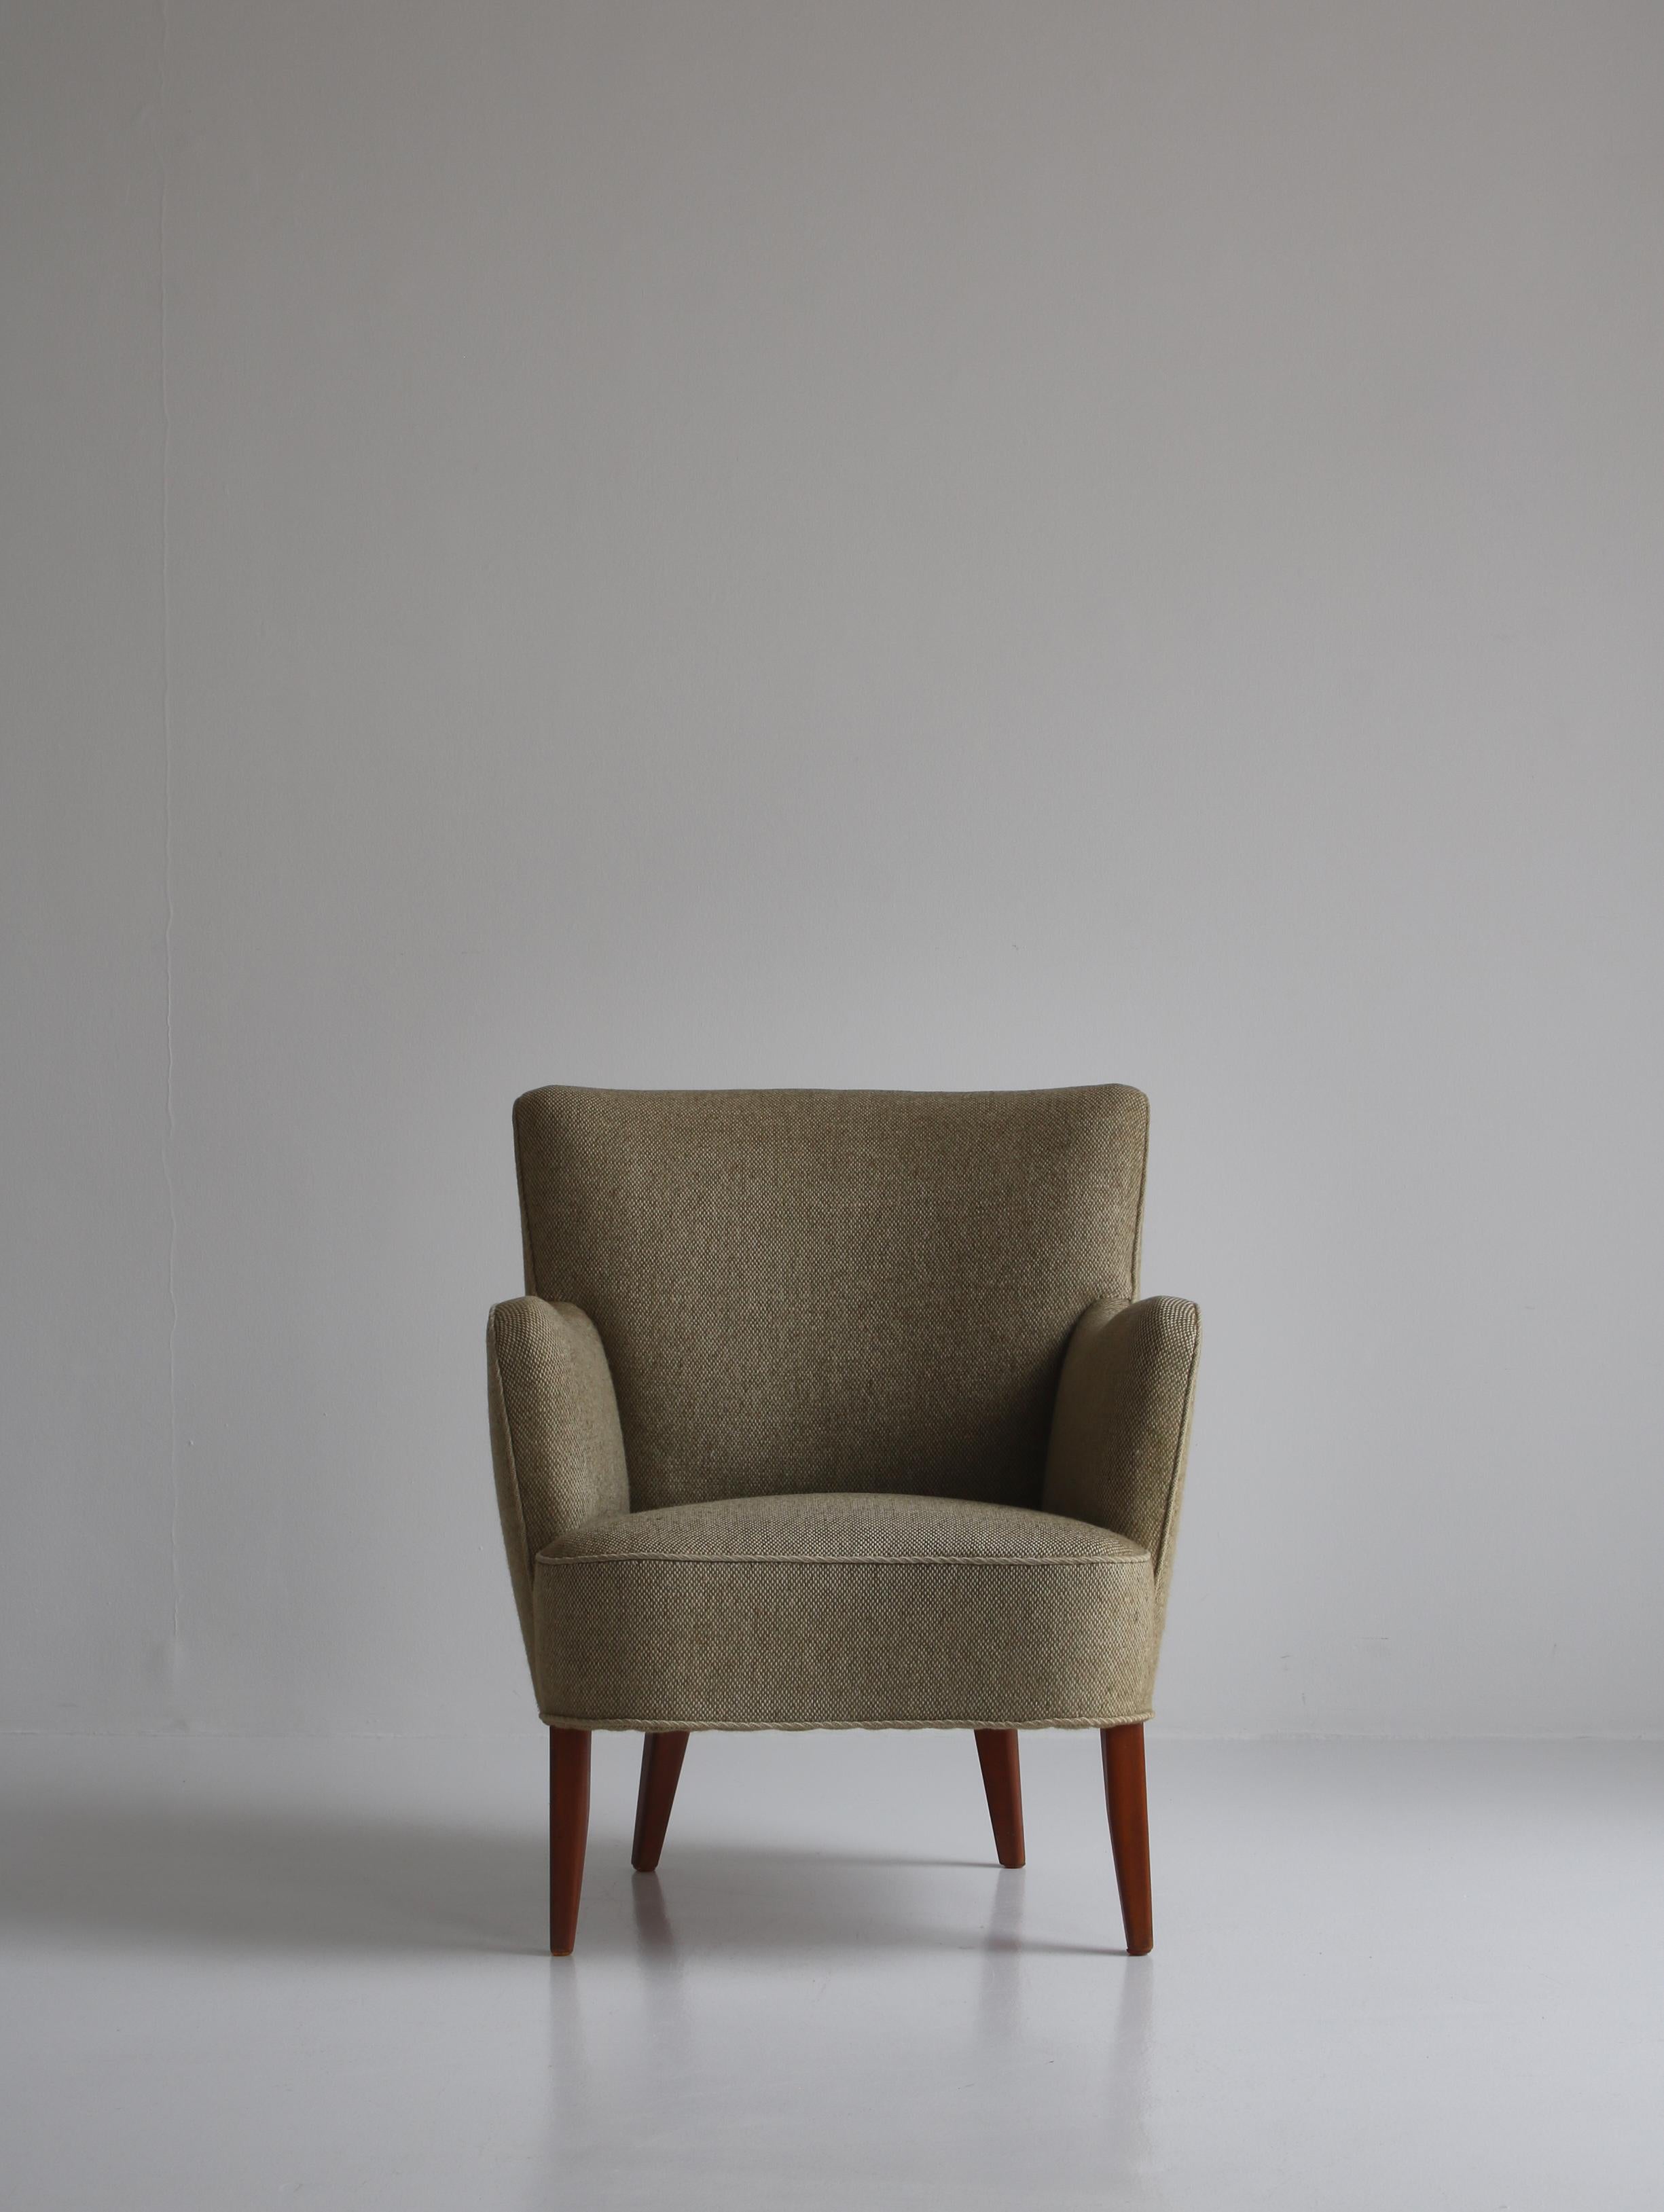 Charmant fauteuil vintage fabriqué dans les années 1950 au Danemark et attribué à Peter Hvidt & Orla Mølgaard. La chaise est dans un état d'origine étonnant et a encore la belle tapisserie en laine d'origine avec très peu de signes d'utilisation.